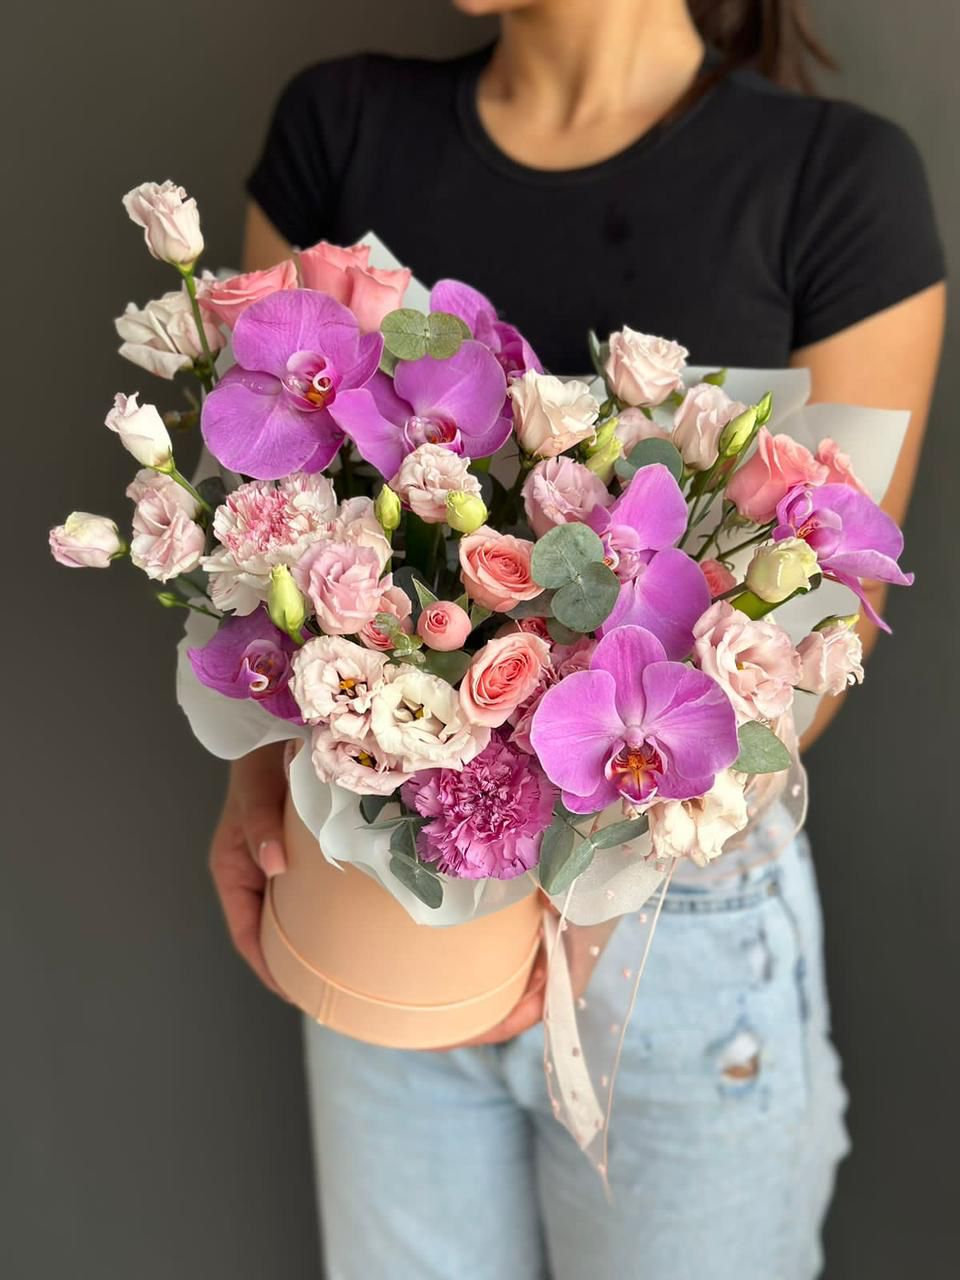 Композиция "Твинкли" с лизиантусом, гвоздикой, розой и орхидеей